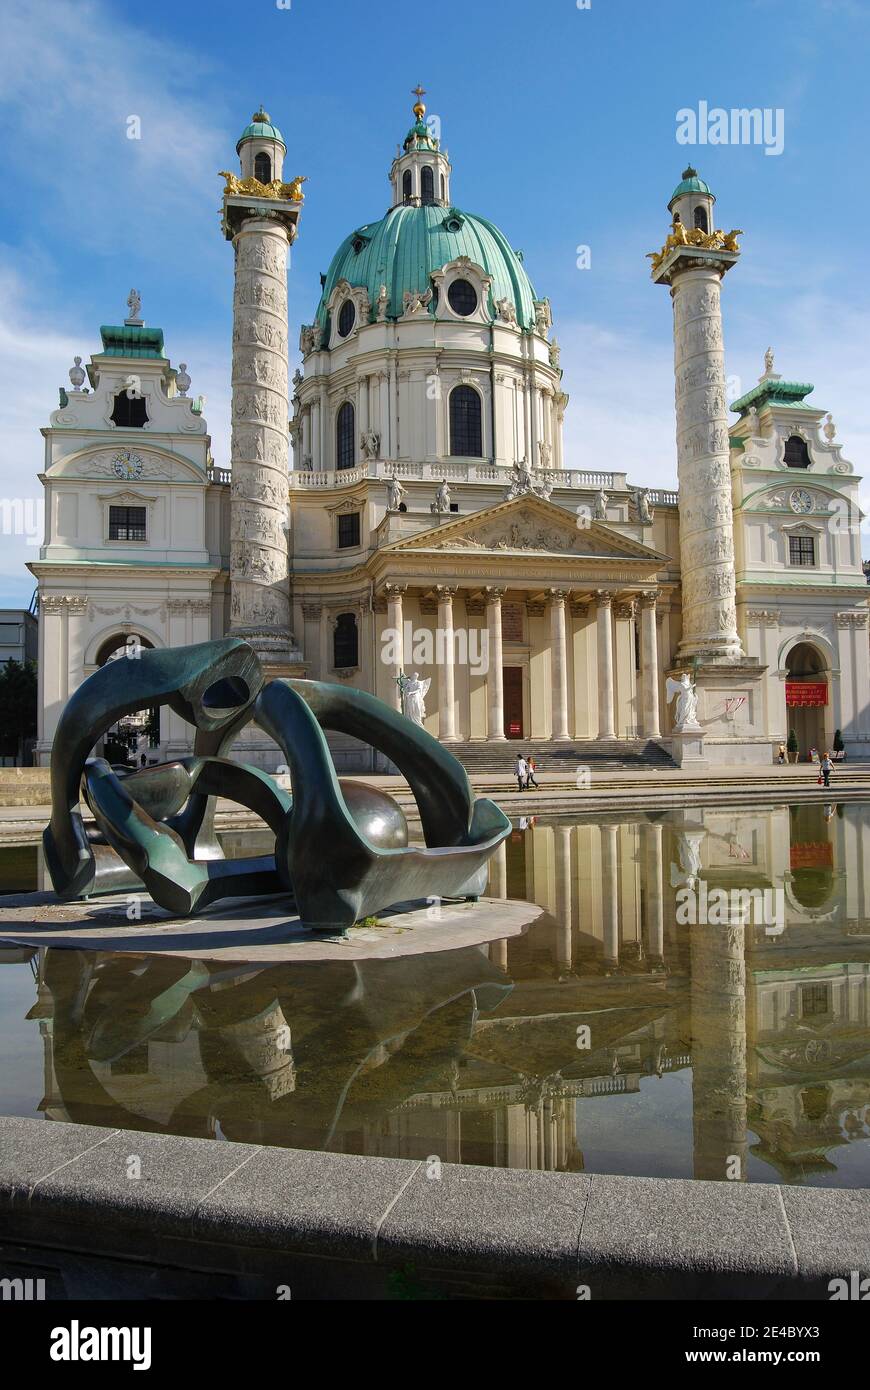 Karlskirche, Karlsplatz, Vienna, Wein, Republic of Austria Stock Photo